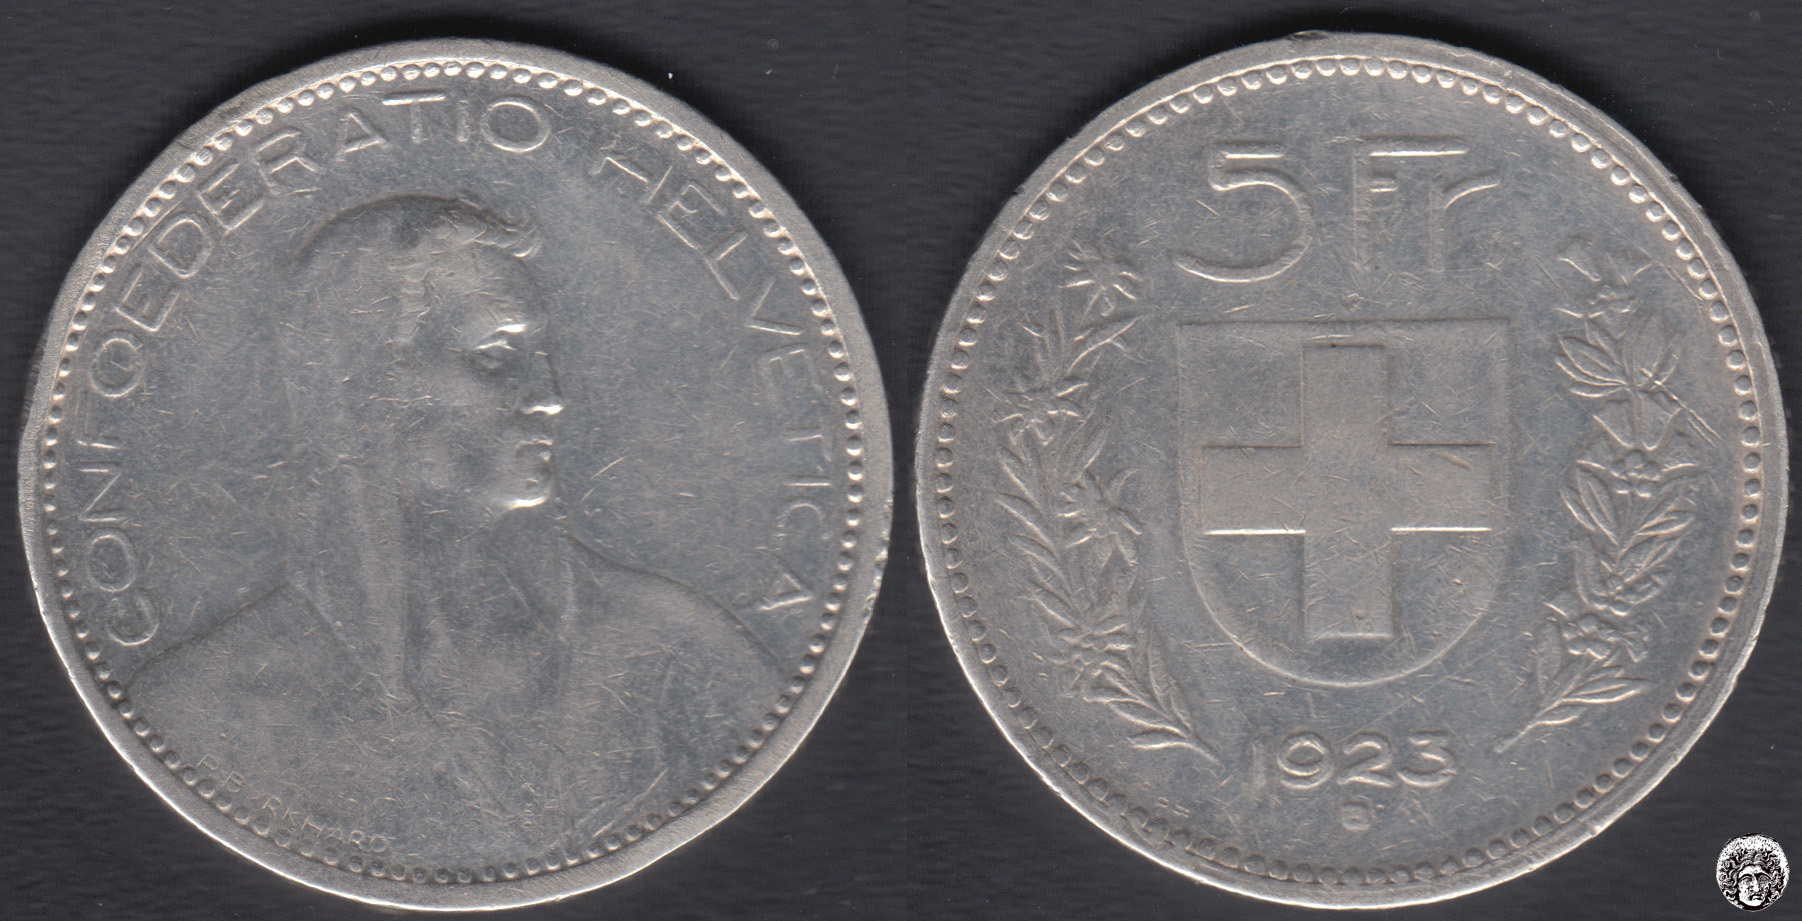 SUIZA - SWITZERLAND. 5 FRANCOS (FRANCS) DE 1923 B. PLATA 0.900.